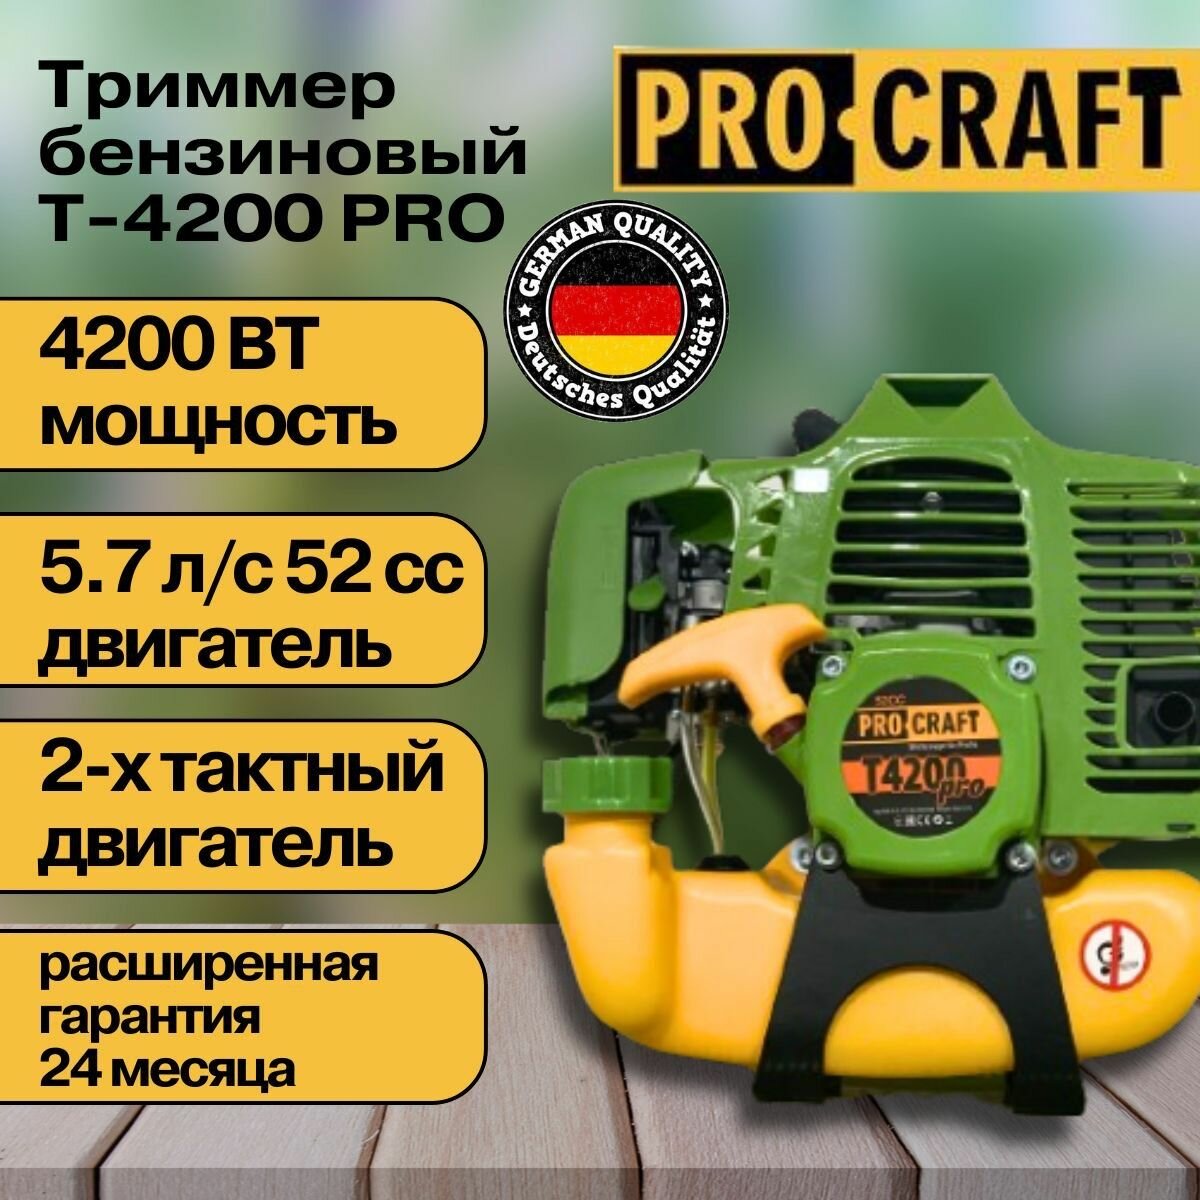 Коса бензиновая Procraft, триммер T-4200 Pro (2х тактный двигатель), 52 СС, 4200Вт, 9000об/мин, 415мм